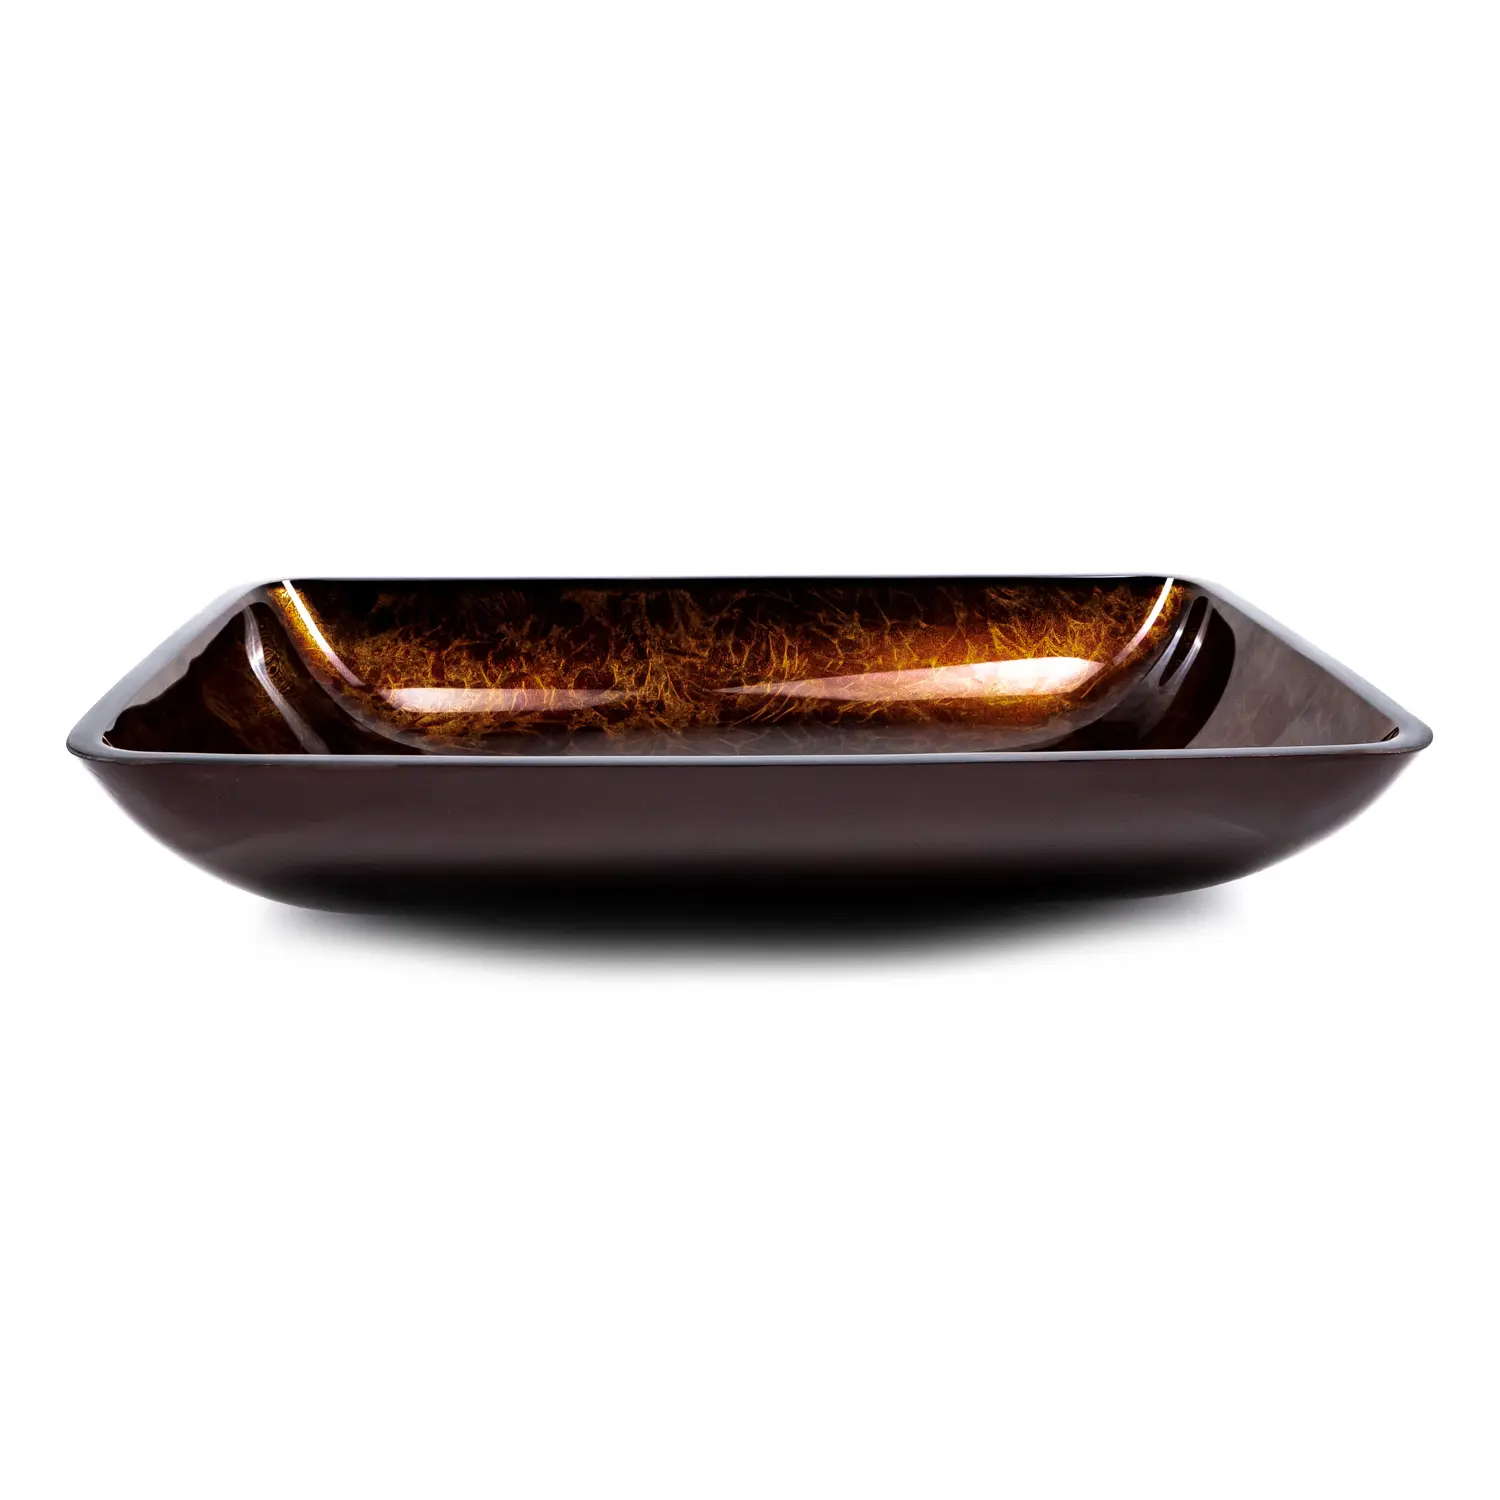 Üveg mosdókagyló bronz színnel szögletes kialakításban, ajándék lefolyóval (18-007)